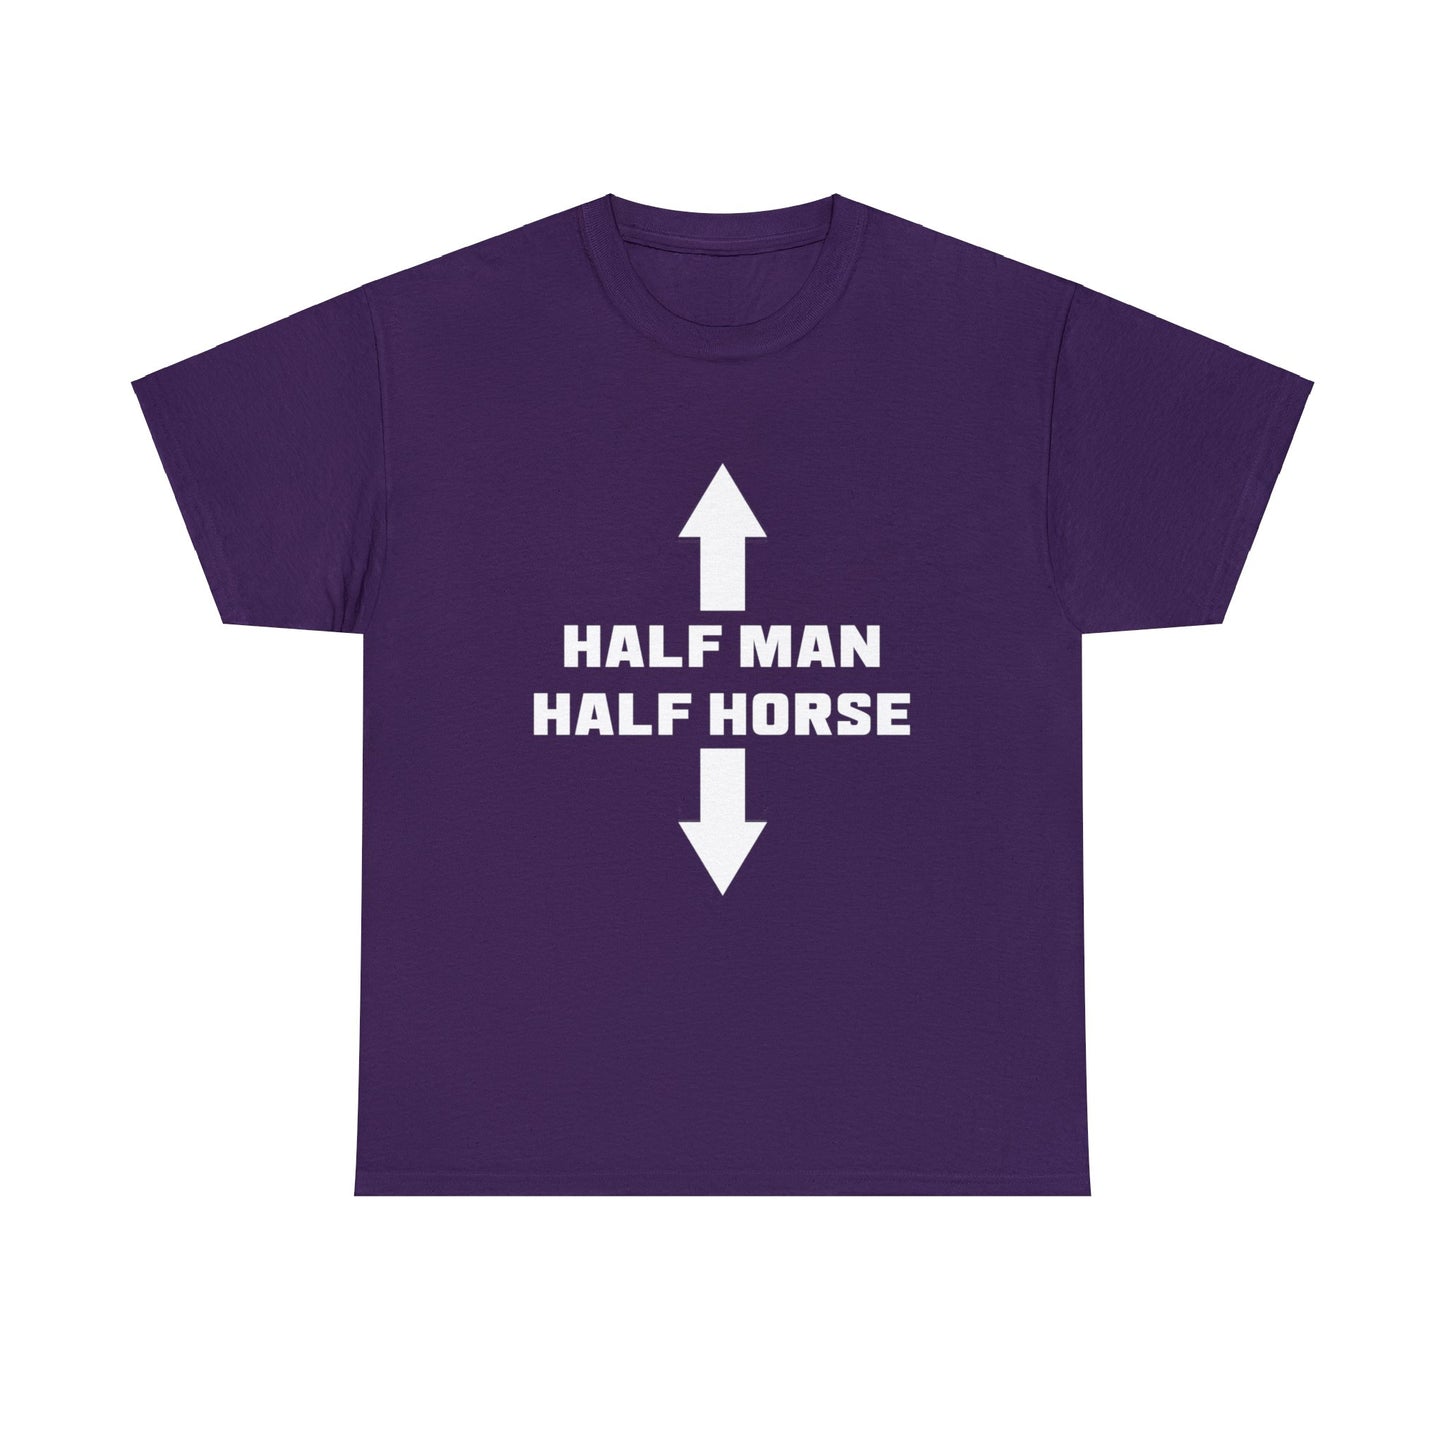 Half Man Half Horse Tee